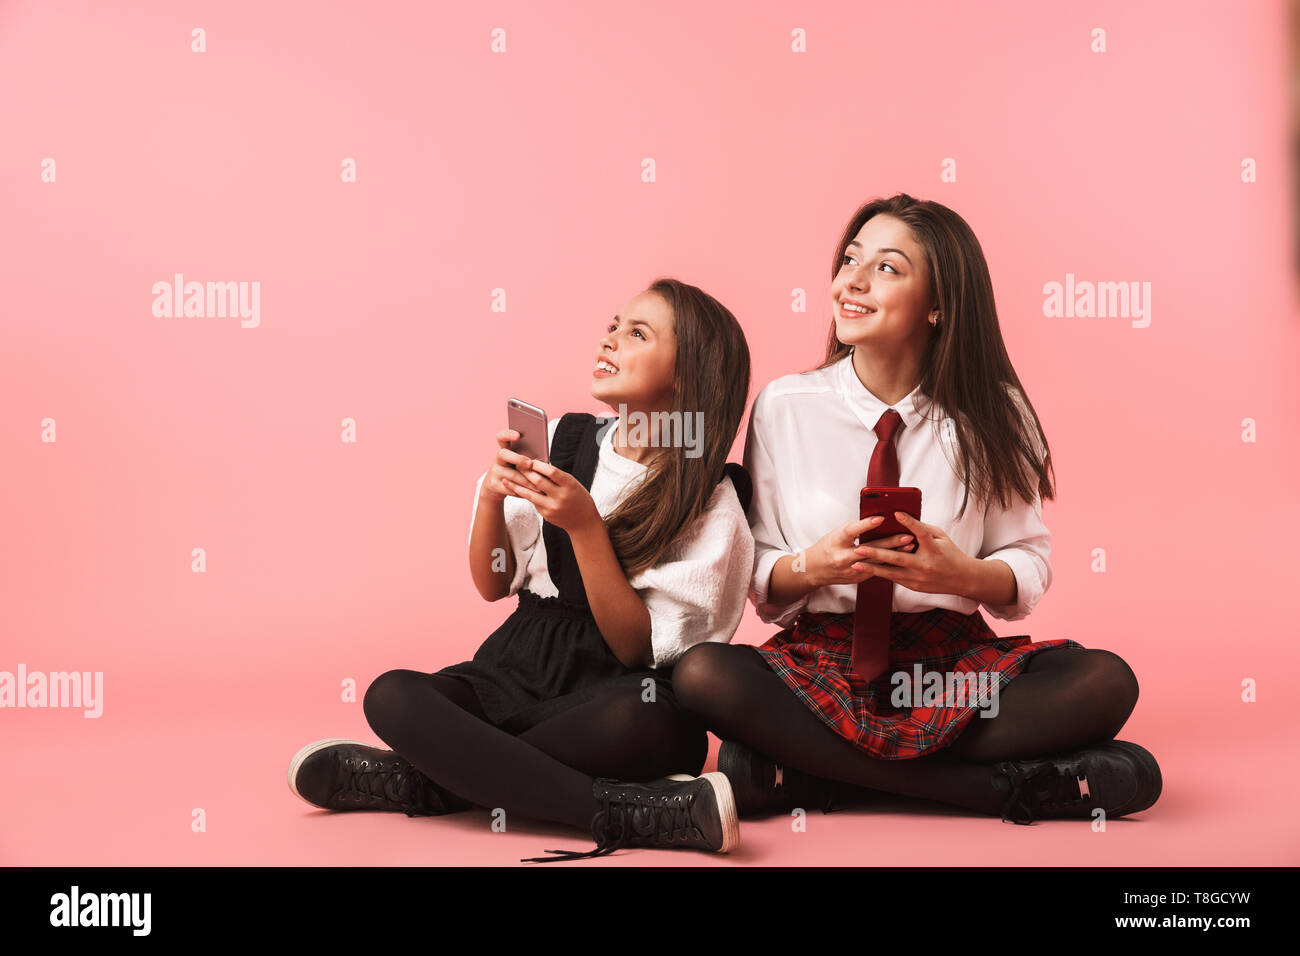 Ritratto di giovani ragazze in uniforme scolastica utilizzando i telefoni cellulari mentre è seduto sul pavimento isolato su sfondo rosso Foto Stock